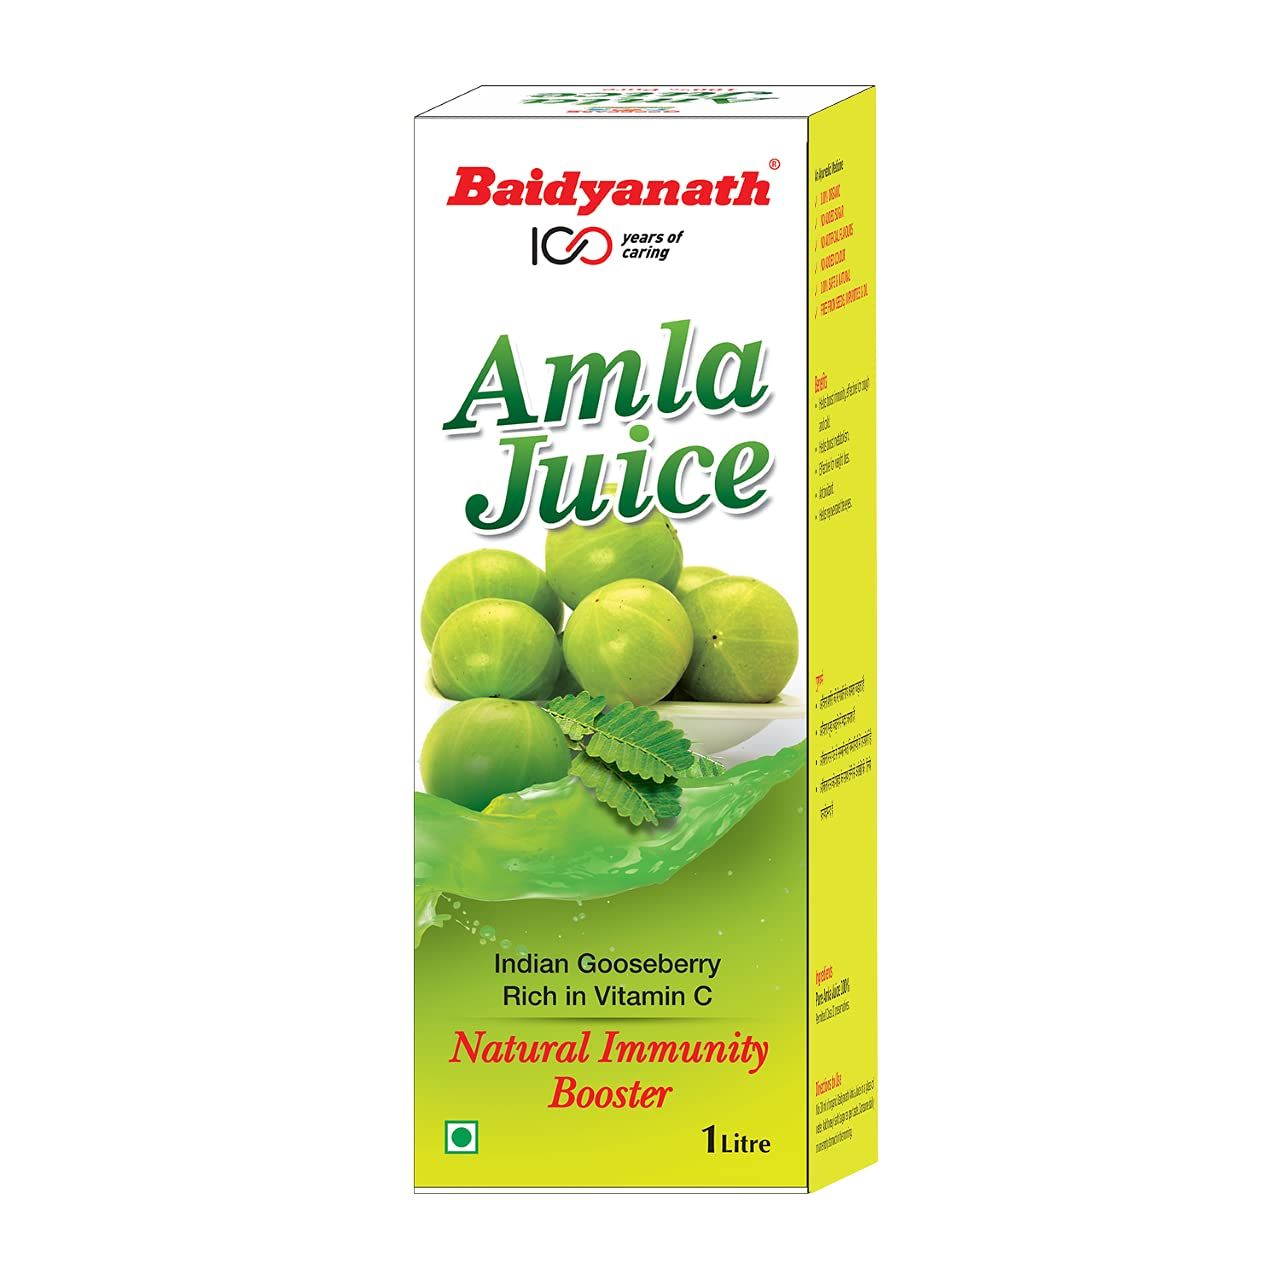 Baidyanath Amla Juice Image